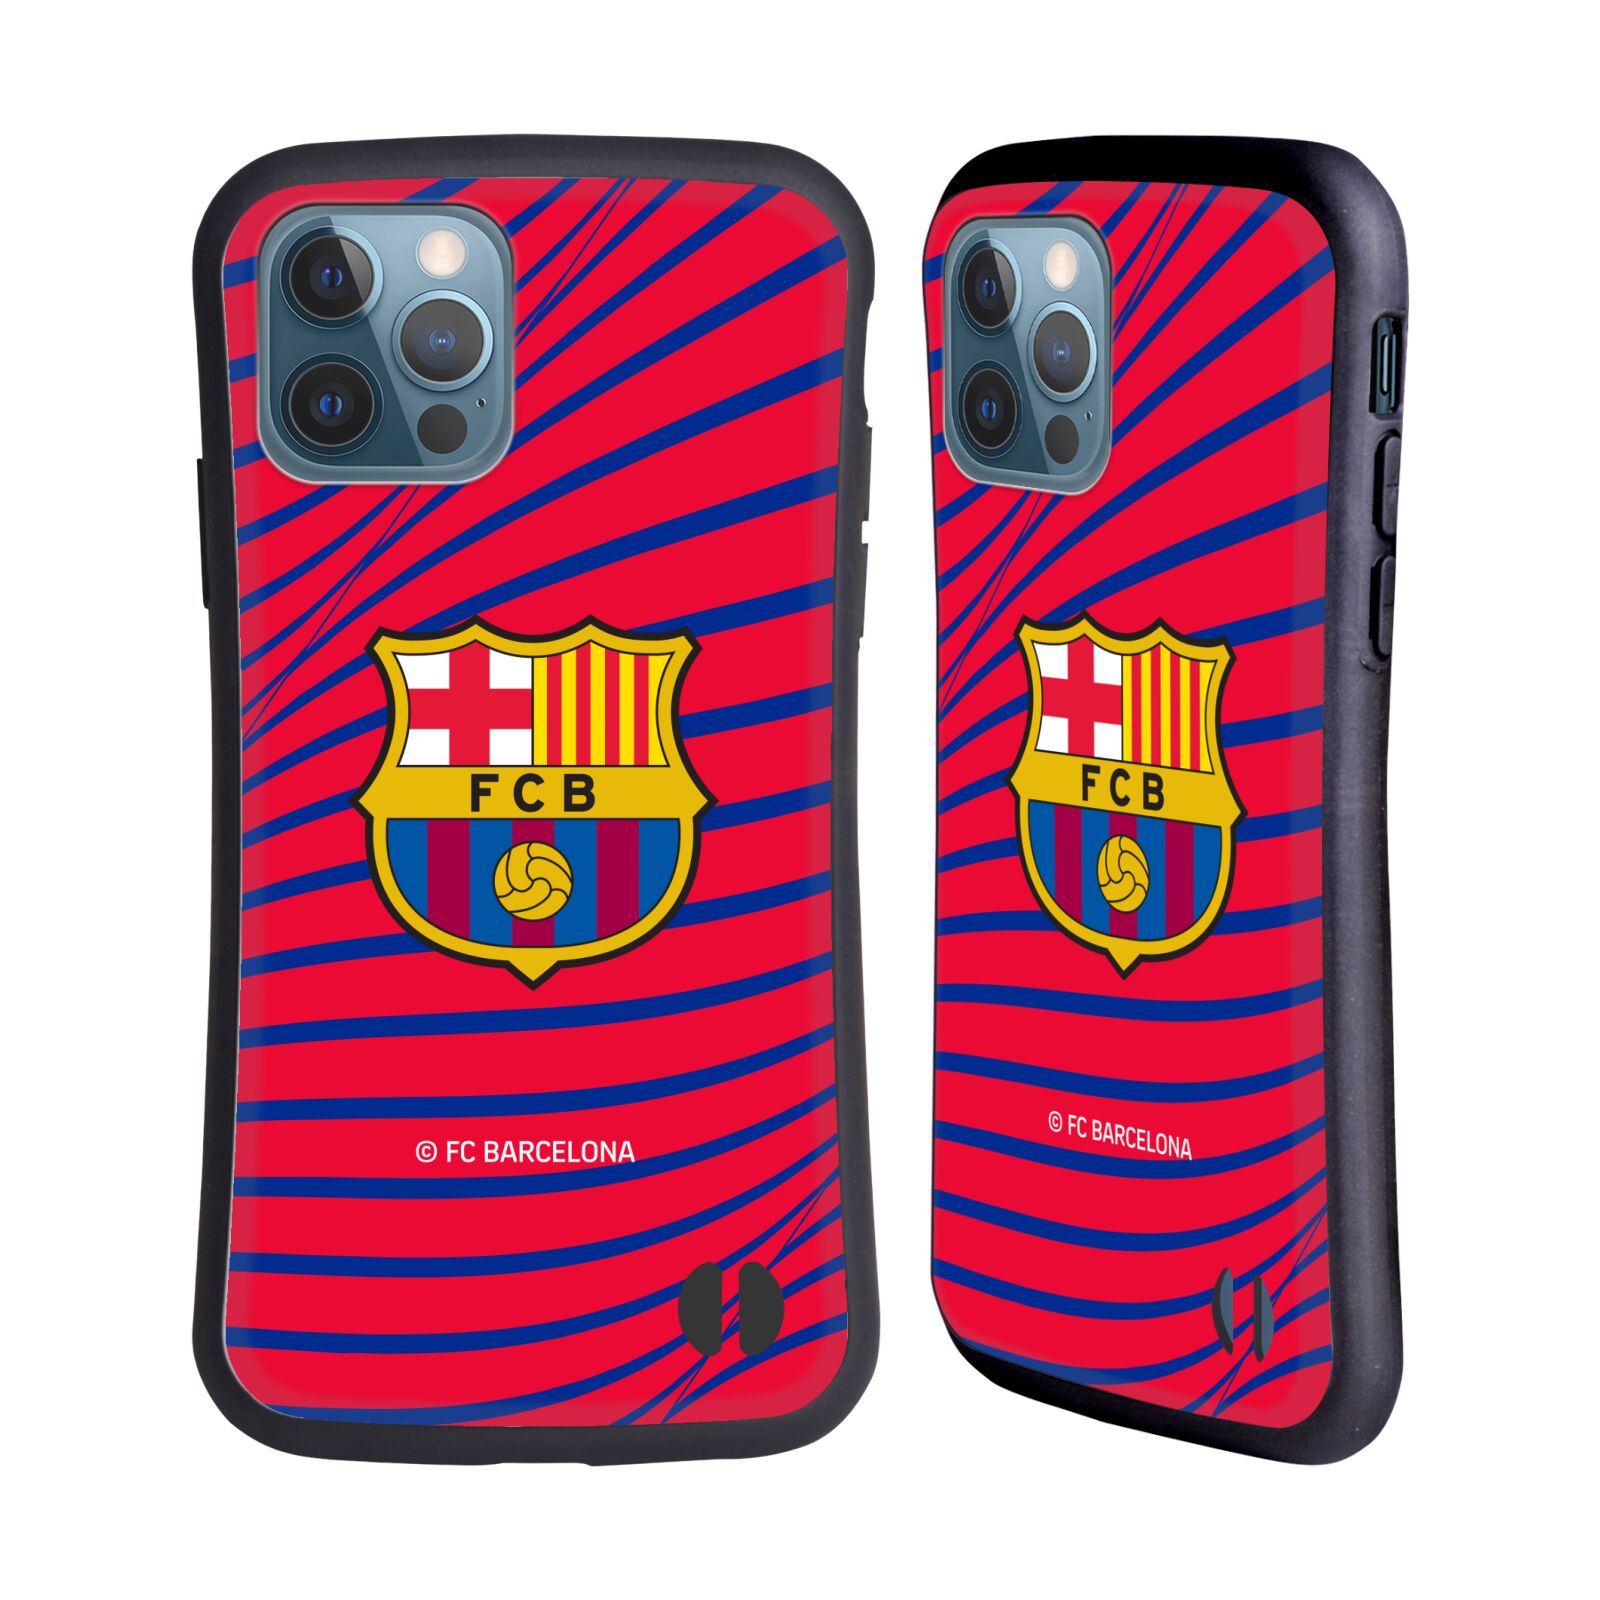 Odolný zadní obal pro mobil Apple iPhone 12 / iPhone 12 Pro - HEAD CASE - FC Barcelona - Červená textura velký znak